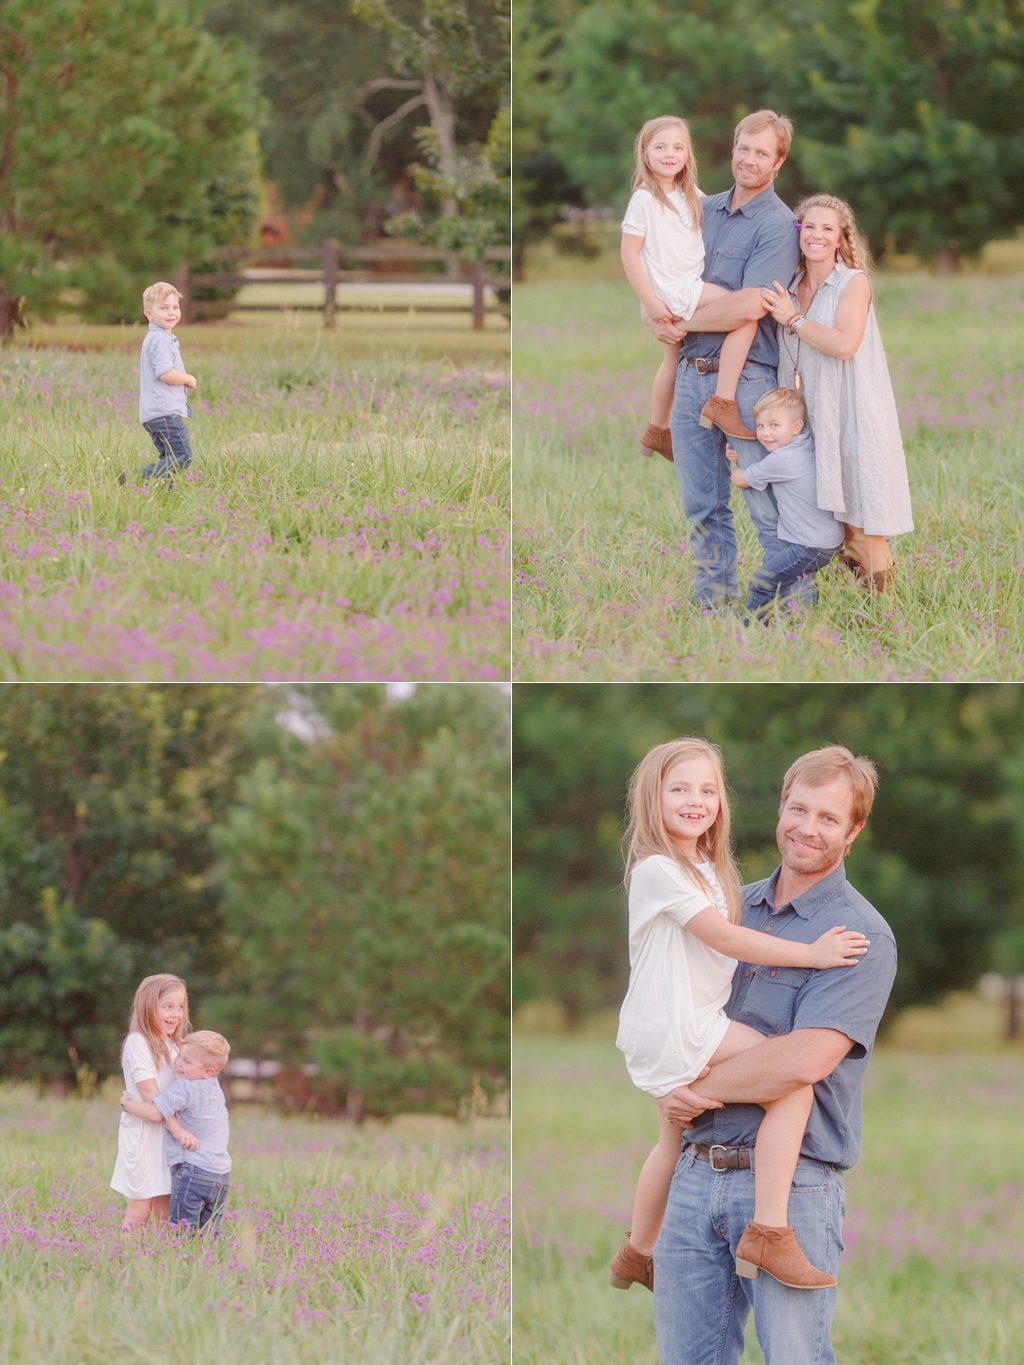 Summer family photos in a purple flower field in Oconee County, GA.